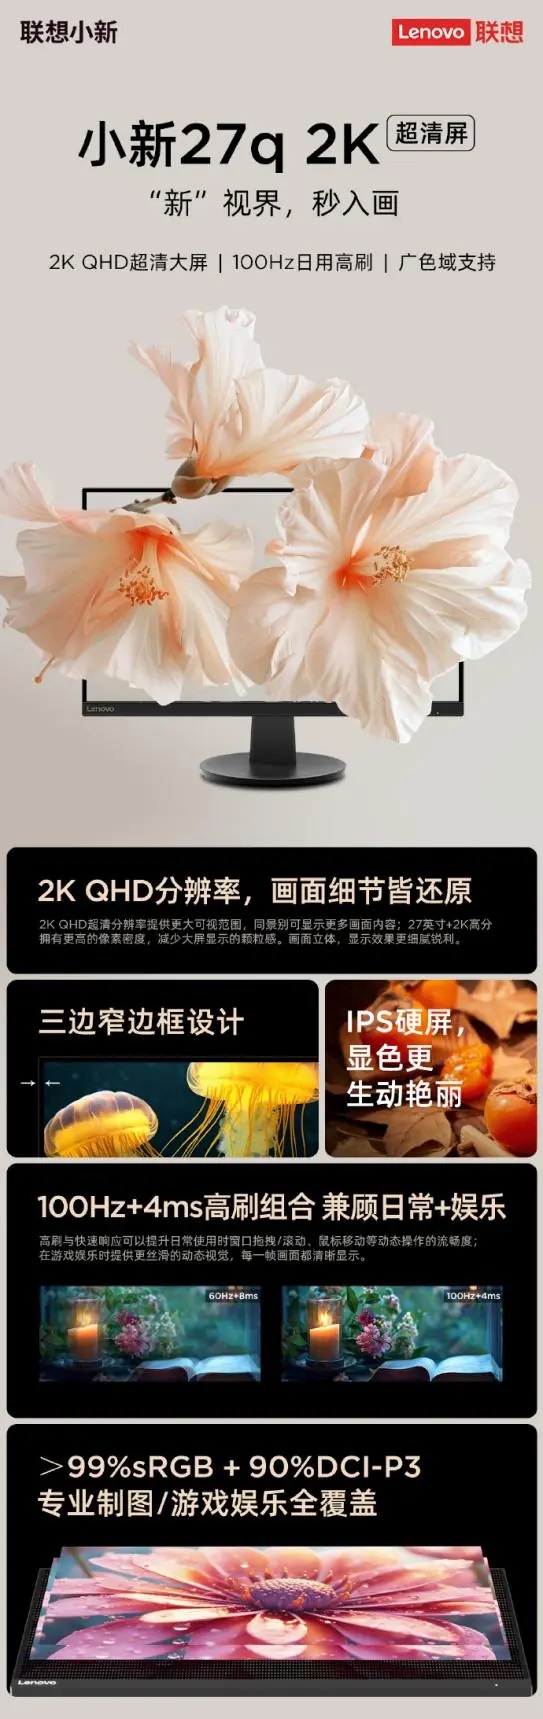 бюджетный монитор Lenovo Xiaoxin 27q 2K